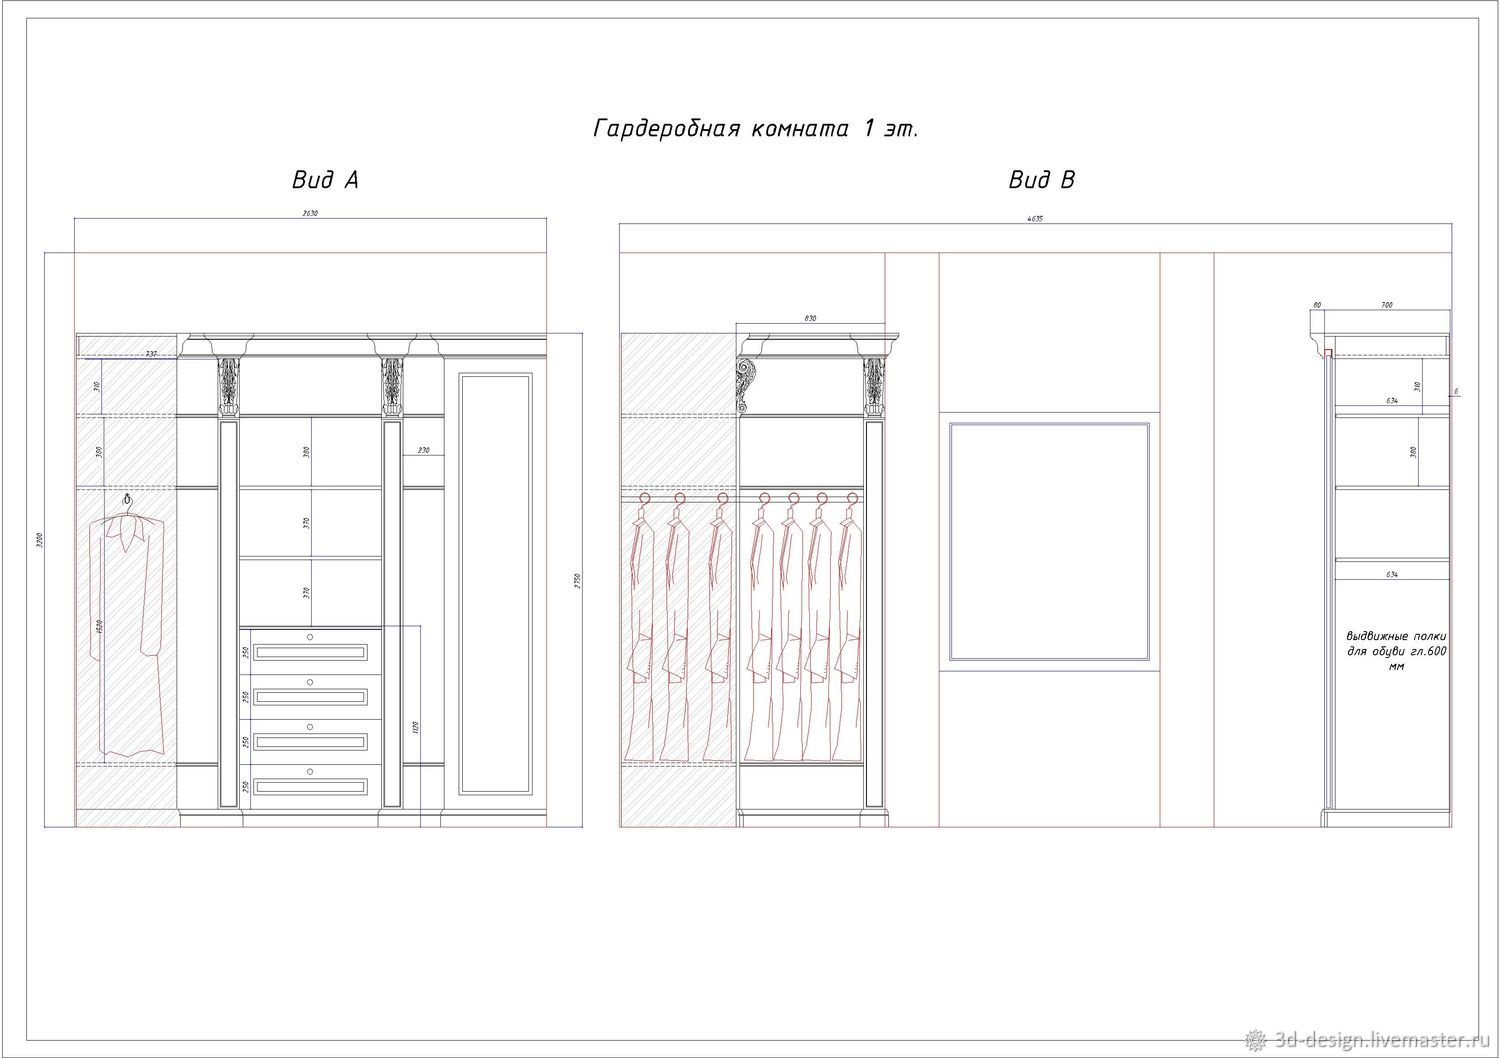 Размеры шкафов для гардеробной комнаты